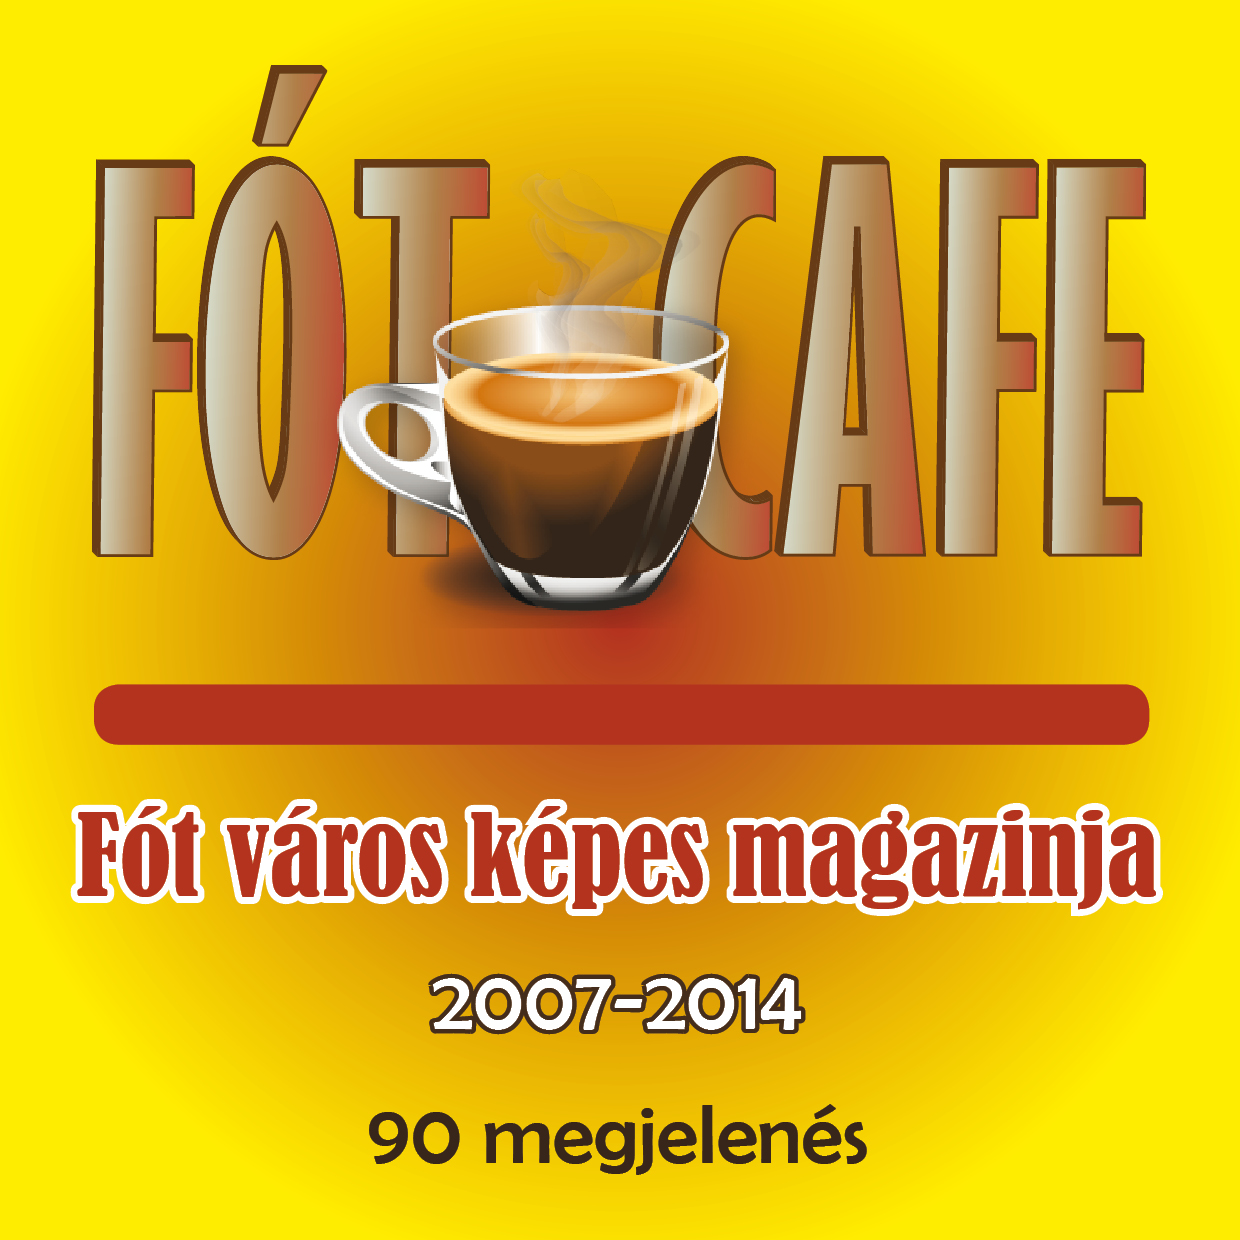 FótCafe újság